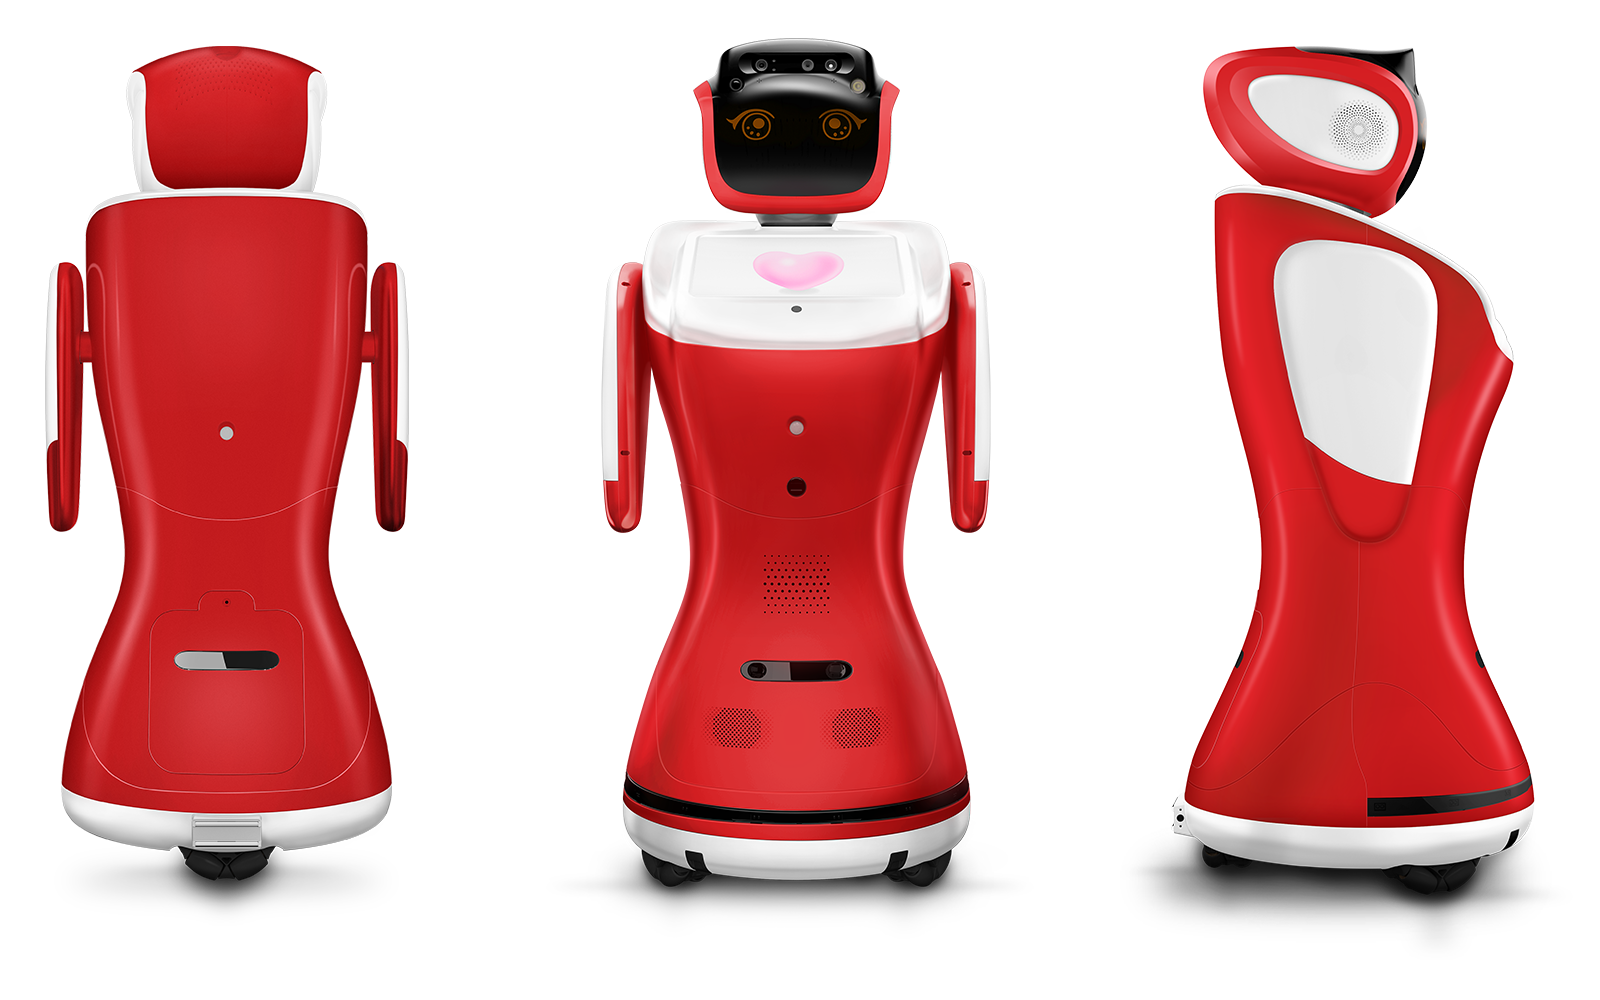 Cloud-brained Humanoid Robot, humanoid telepresence robot